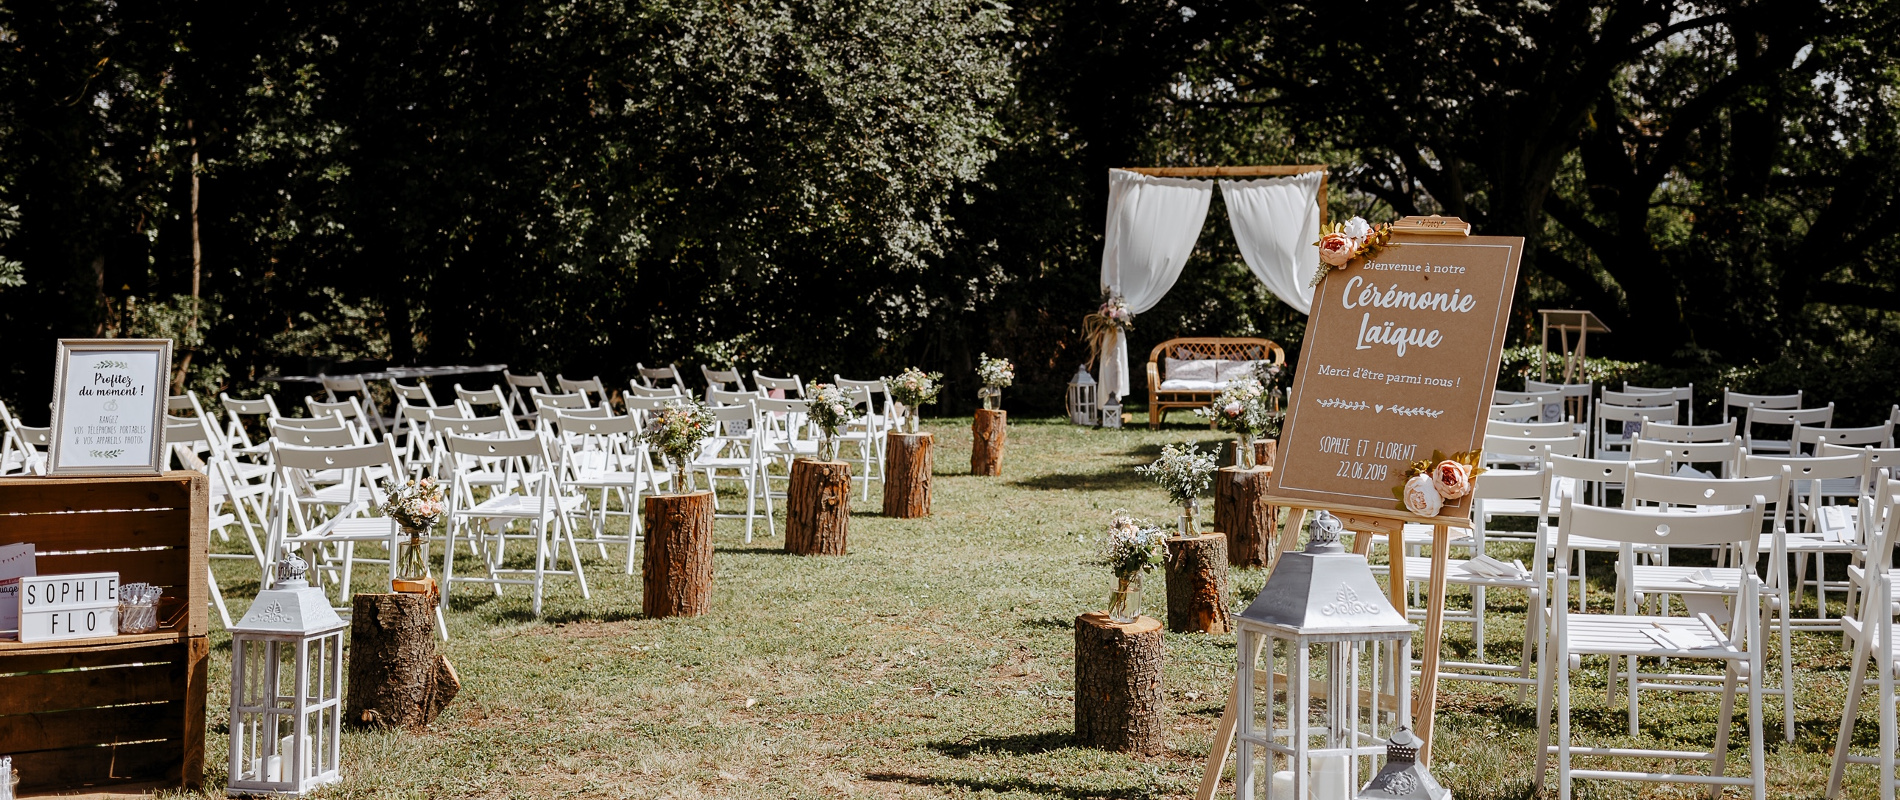 Photo du décor d'une cérémonie de mariage organisée dans les jardins du château de Bois Rigaud près de Clermont-Ferrand